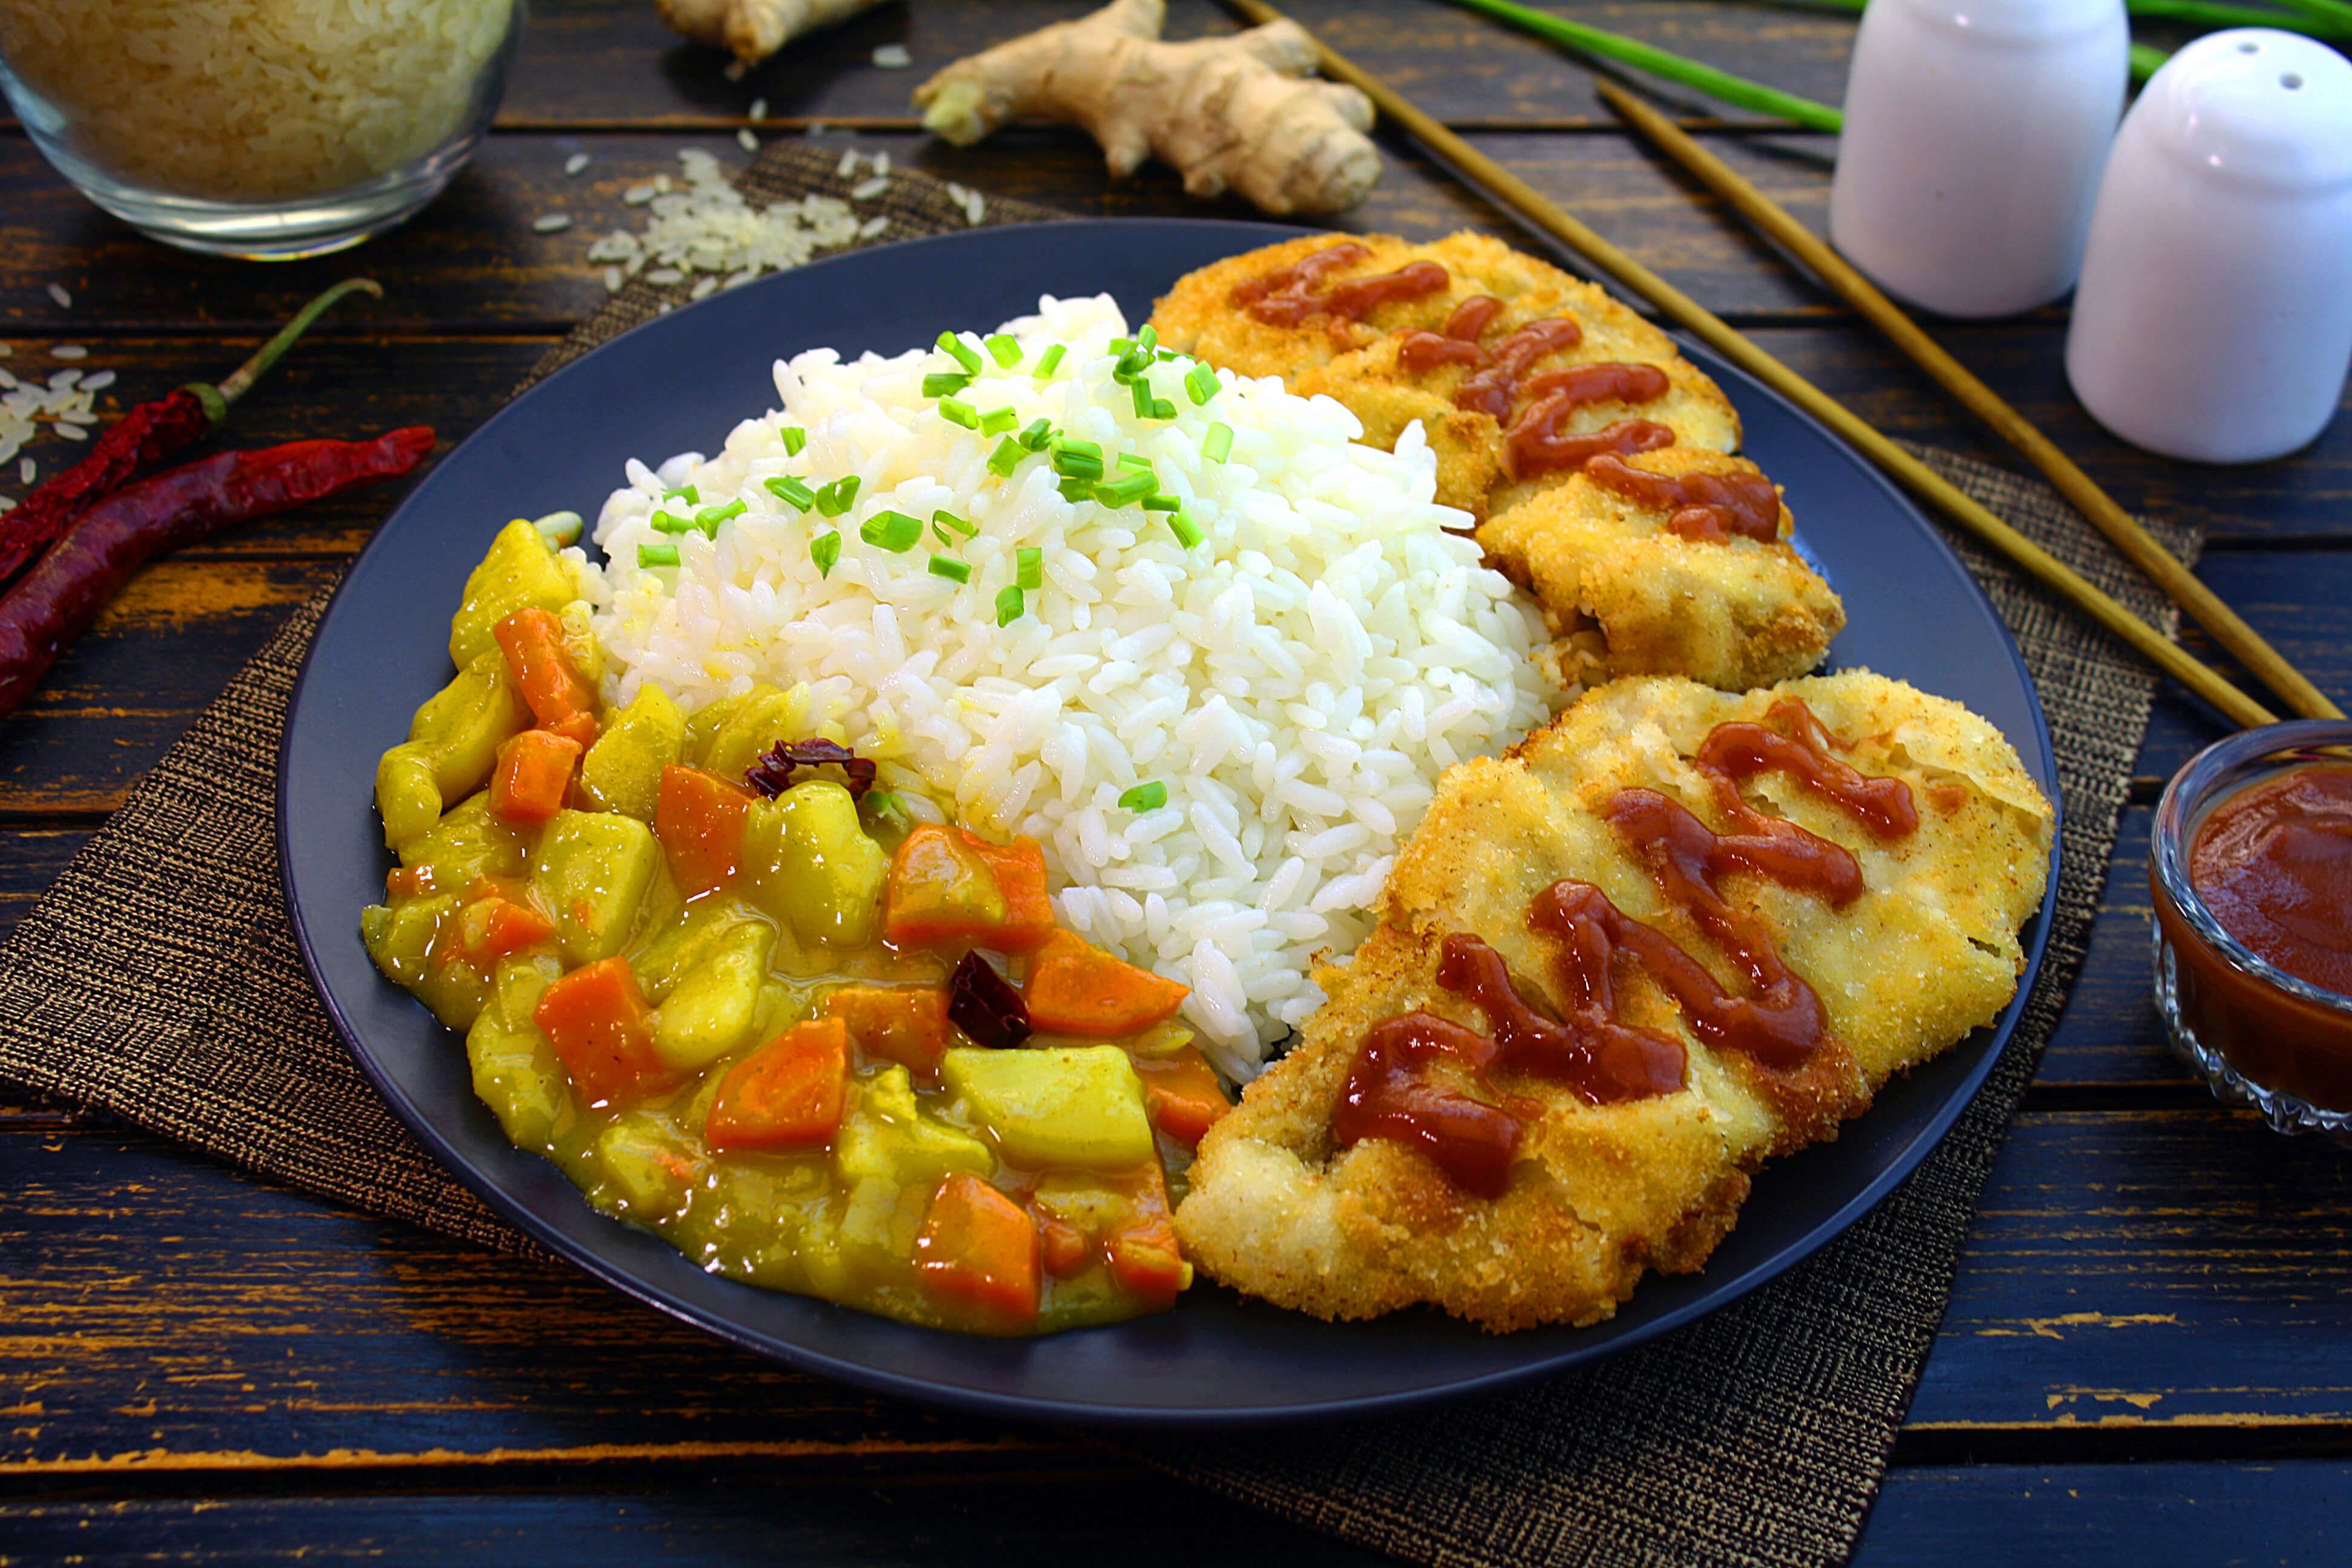 карри с курицей и рисом по японски рецепт с фото | Дзен